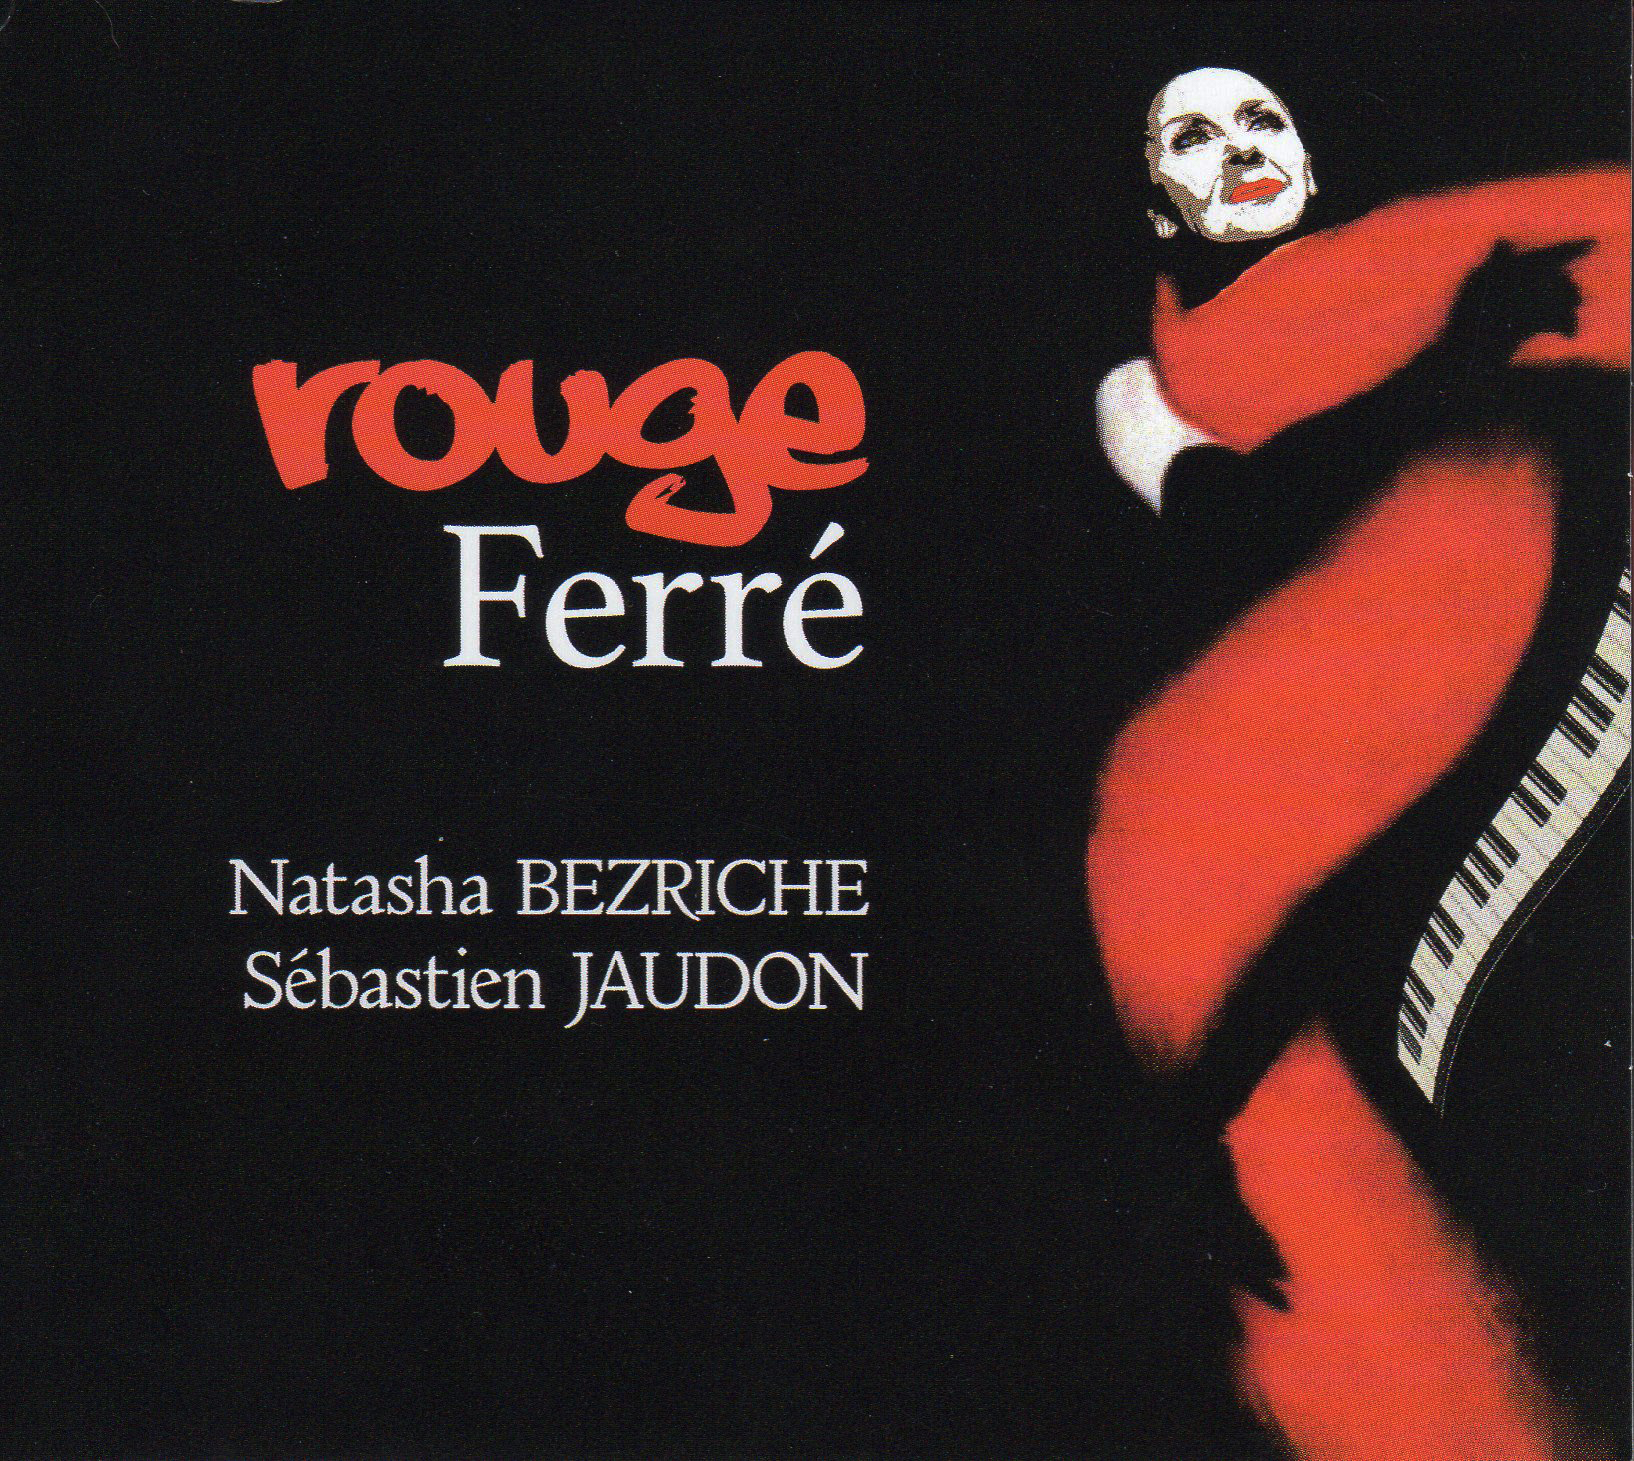 Natasha Bezriche - Rouge Ferr